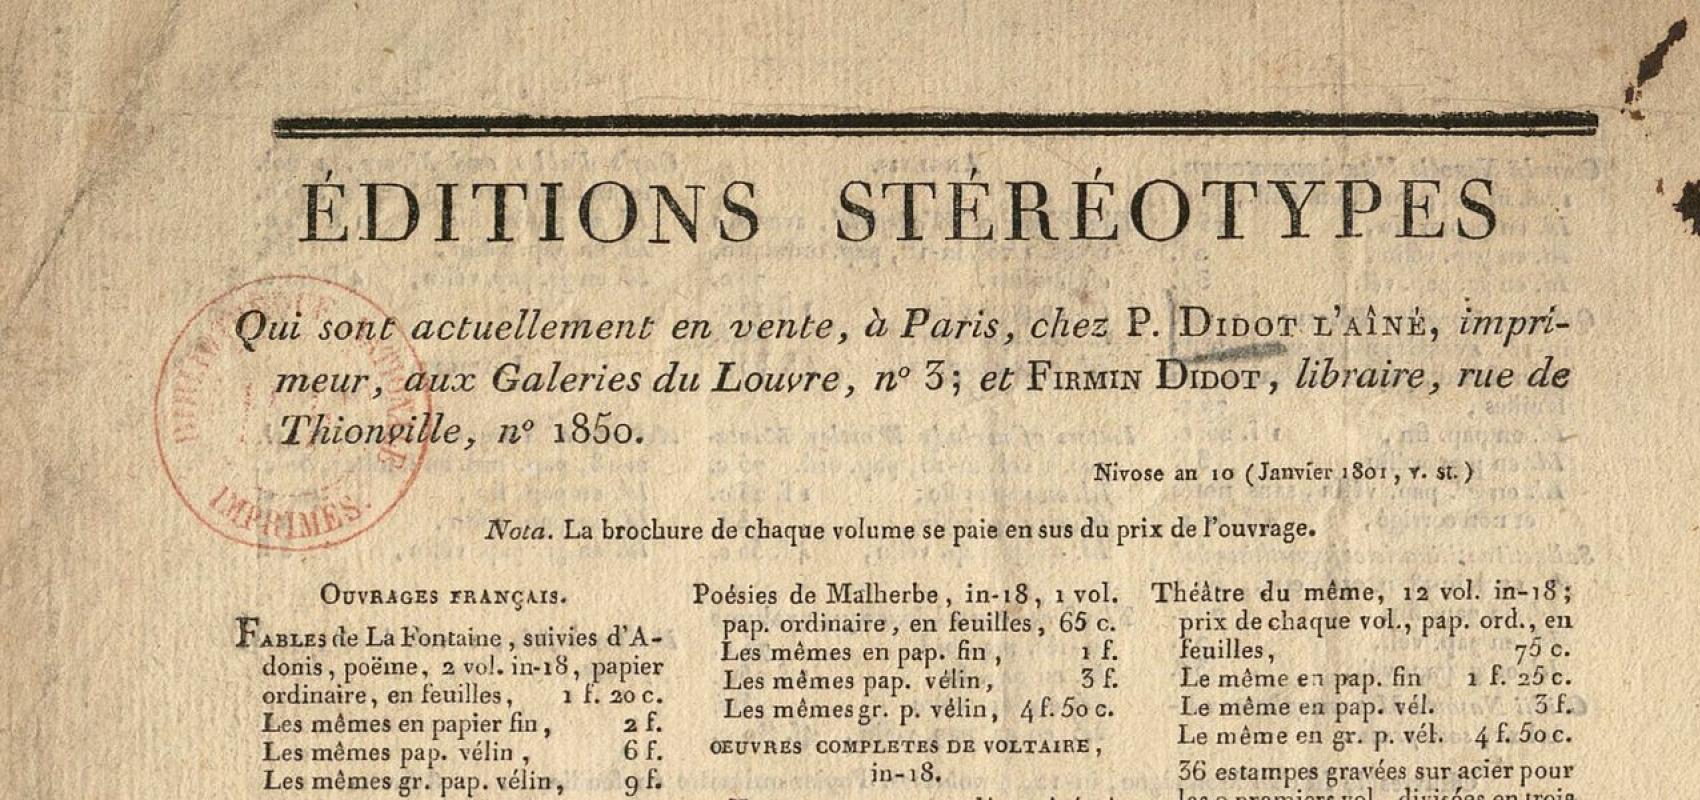 Éditions stéréotypes qui sont actuellement en vente, à Paris, chez P. Didot l'aîné, imprimeur -  - BnF, département Littérature et arts